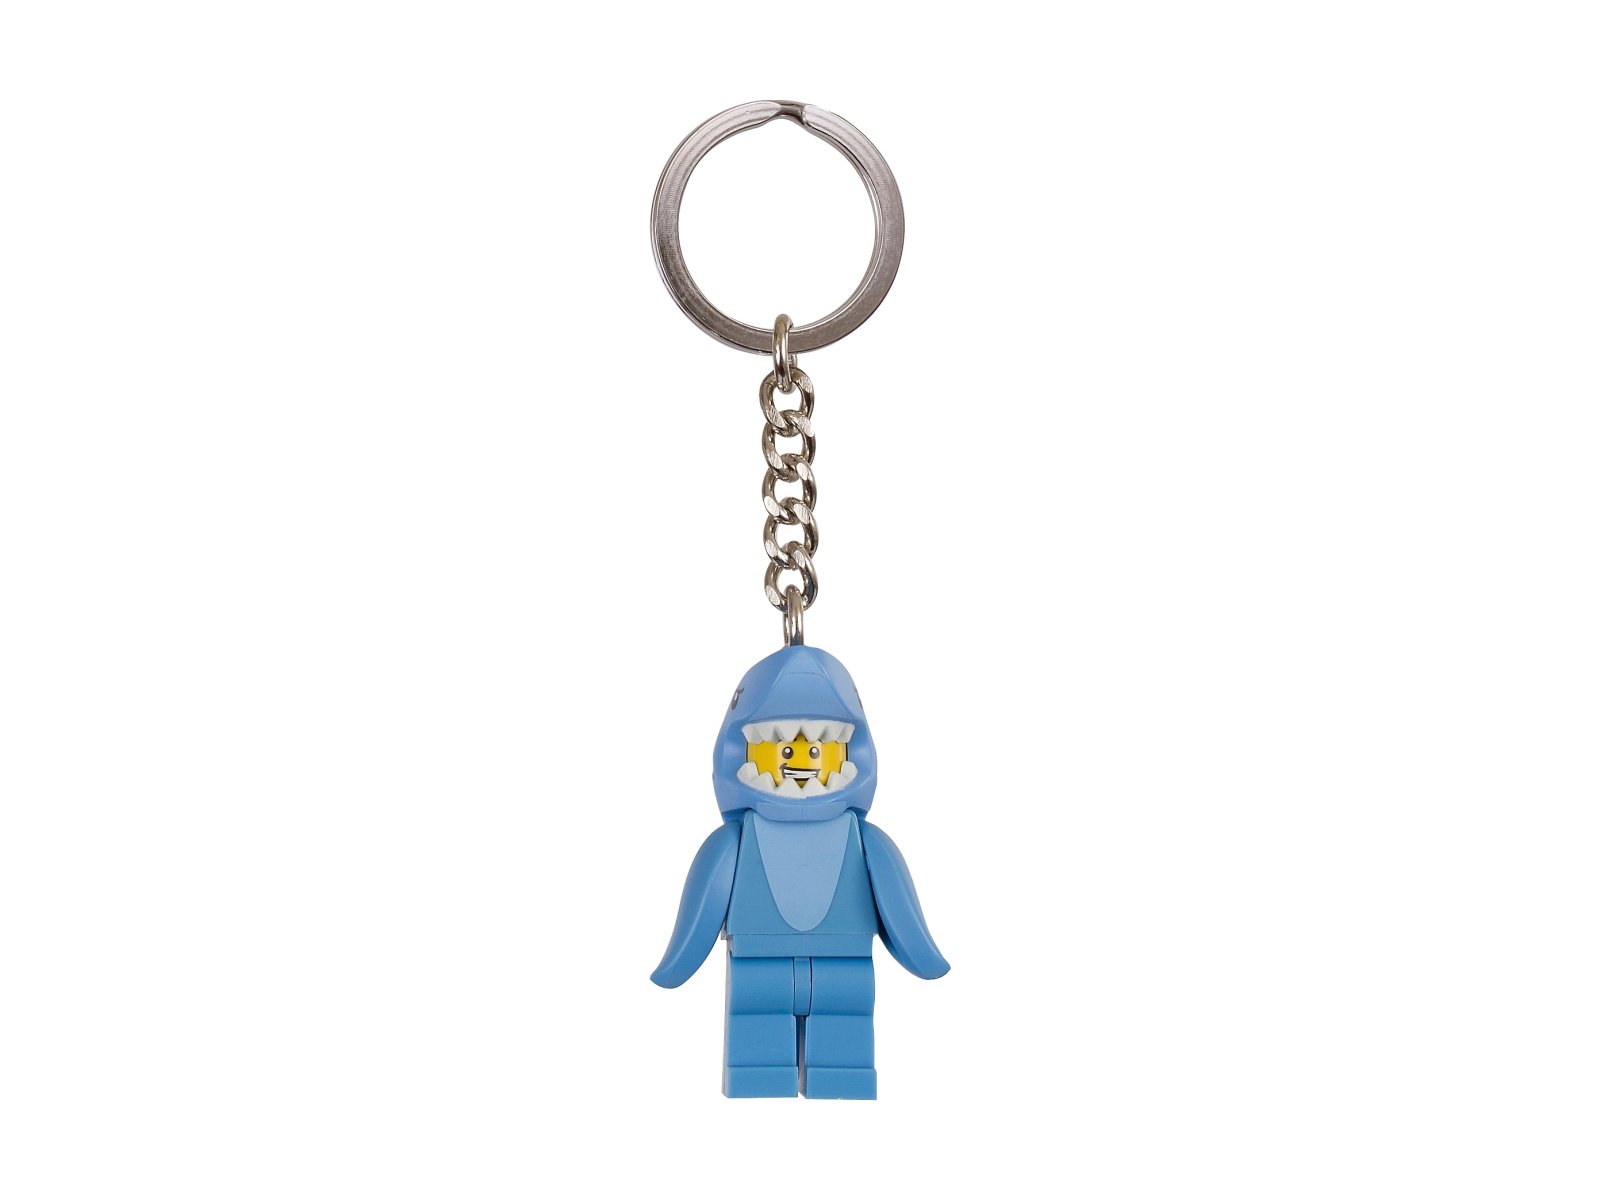 LEGO 853666 Breloczek do kluczy z człowiekiem w stroju rekina